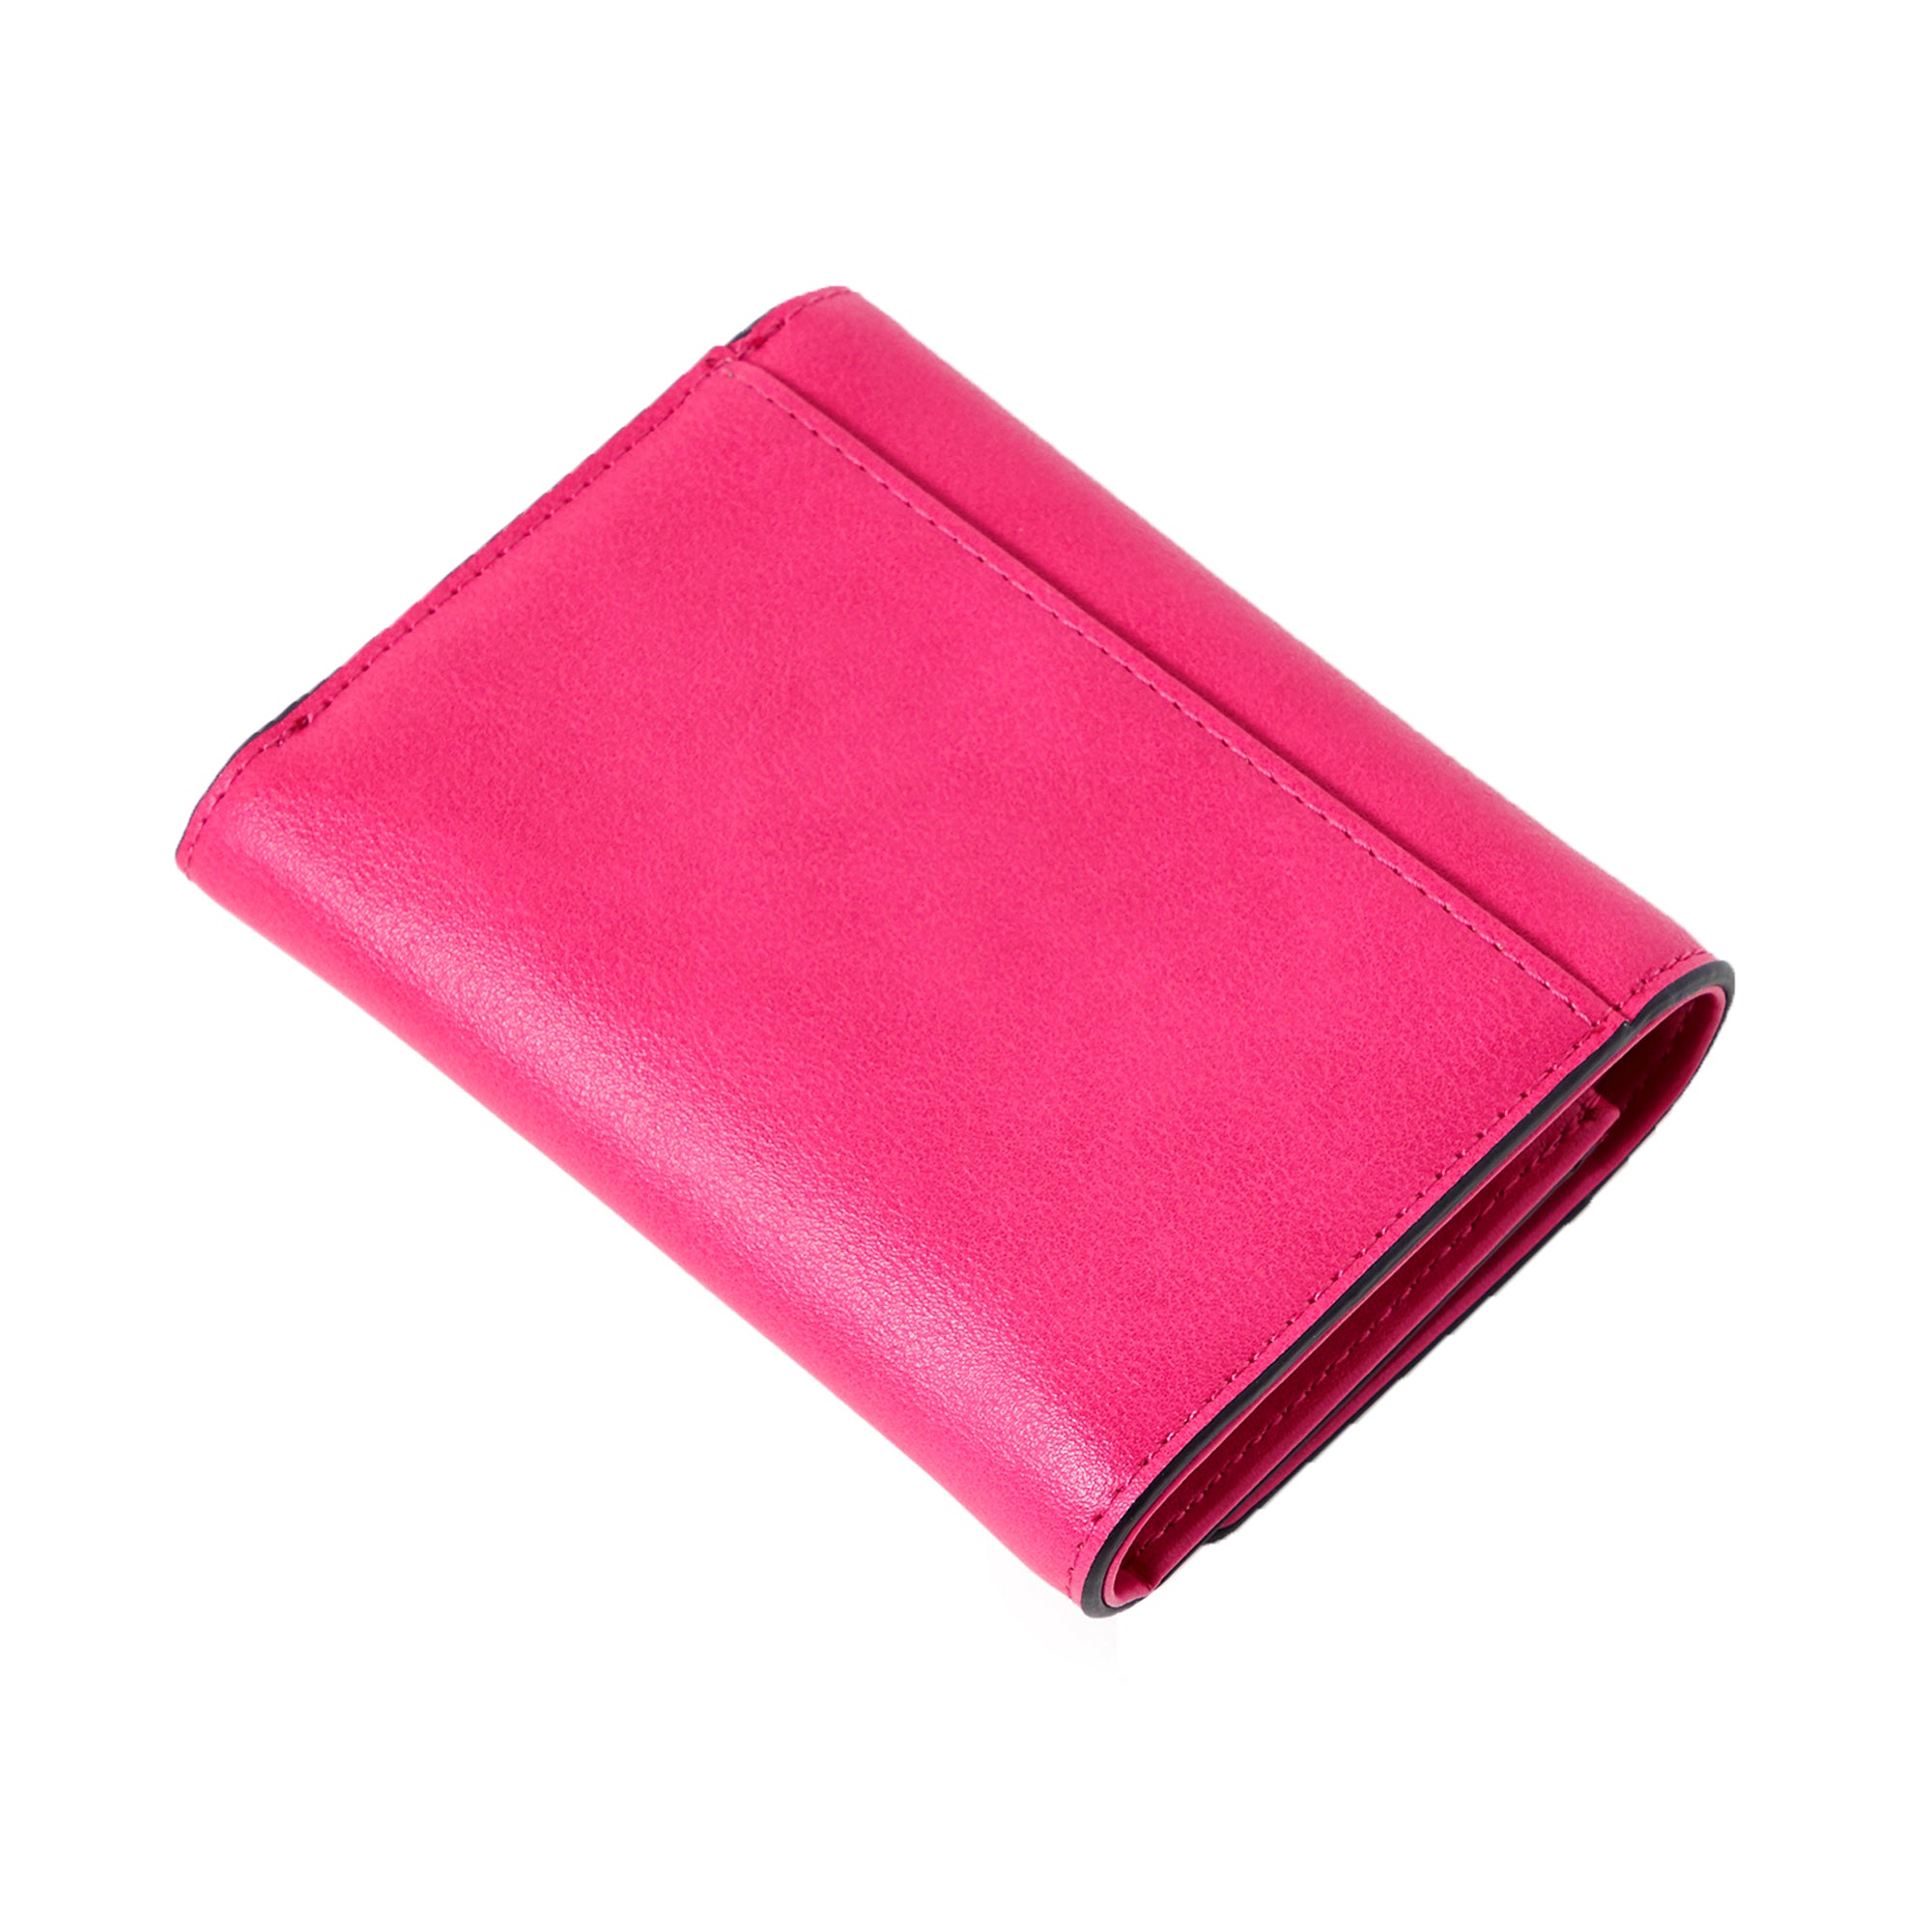 VICTORIA'S SECRET Pink SIGNATURE Stripe Small Wallet / PURSE | eBay